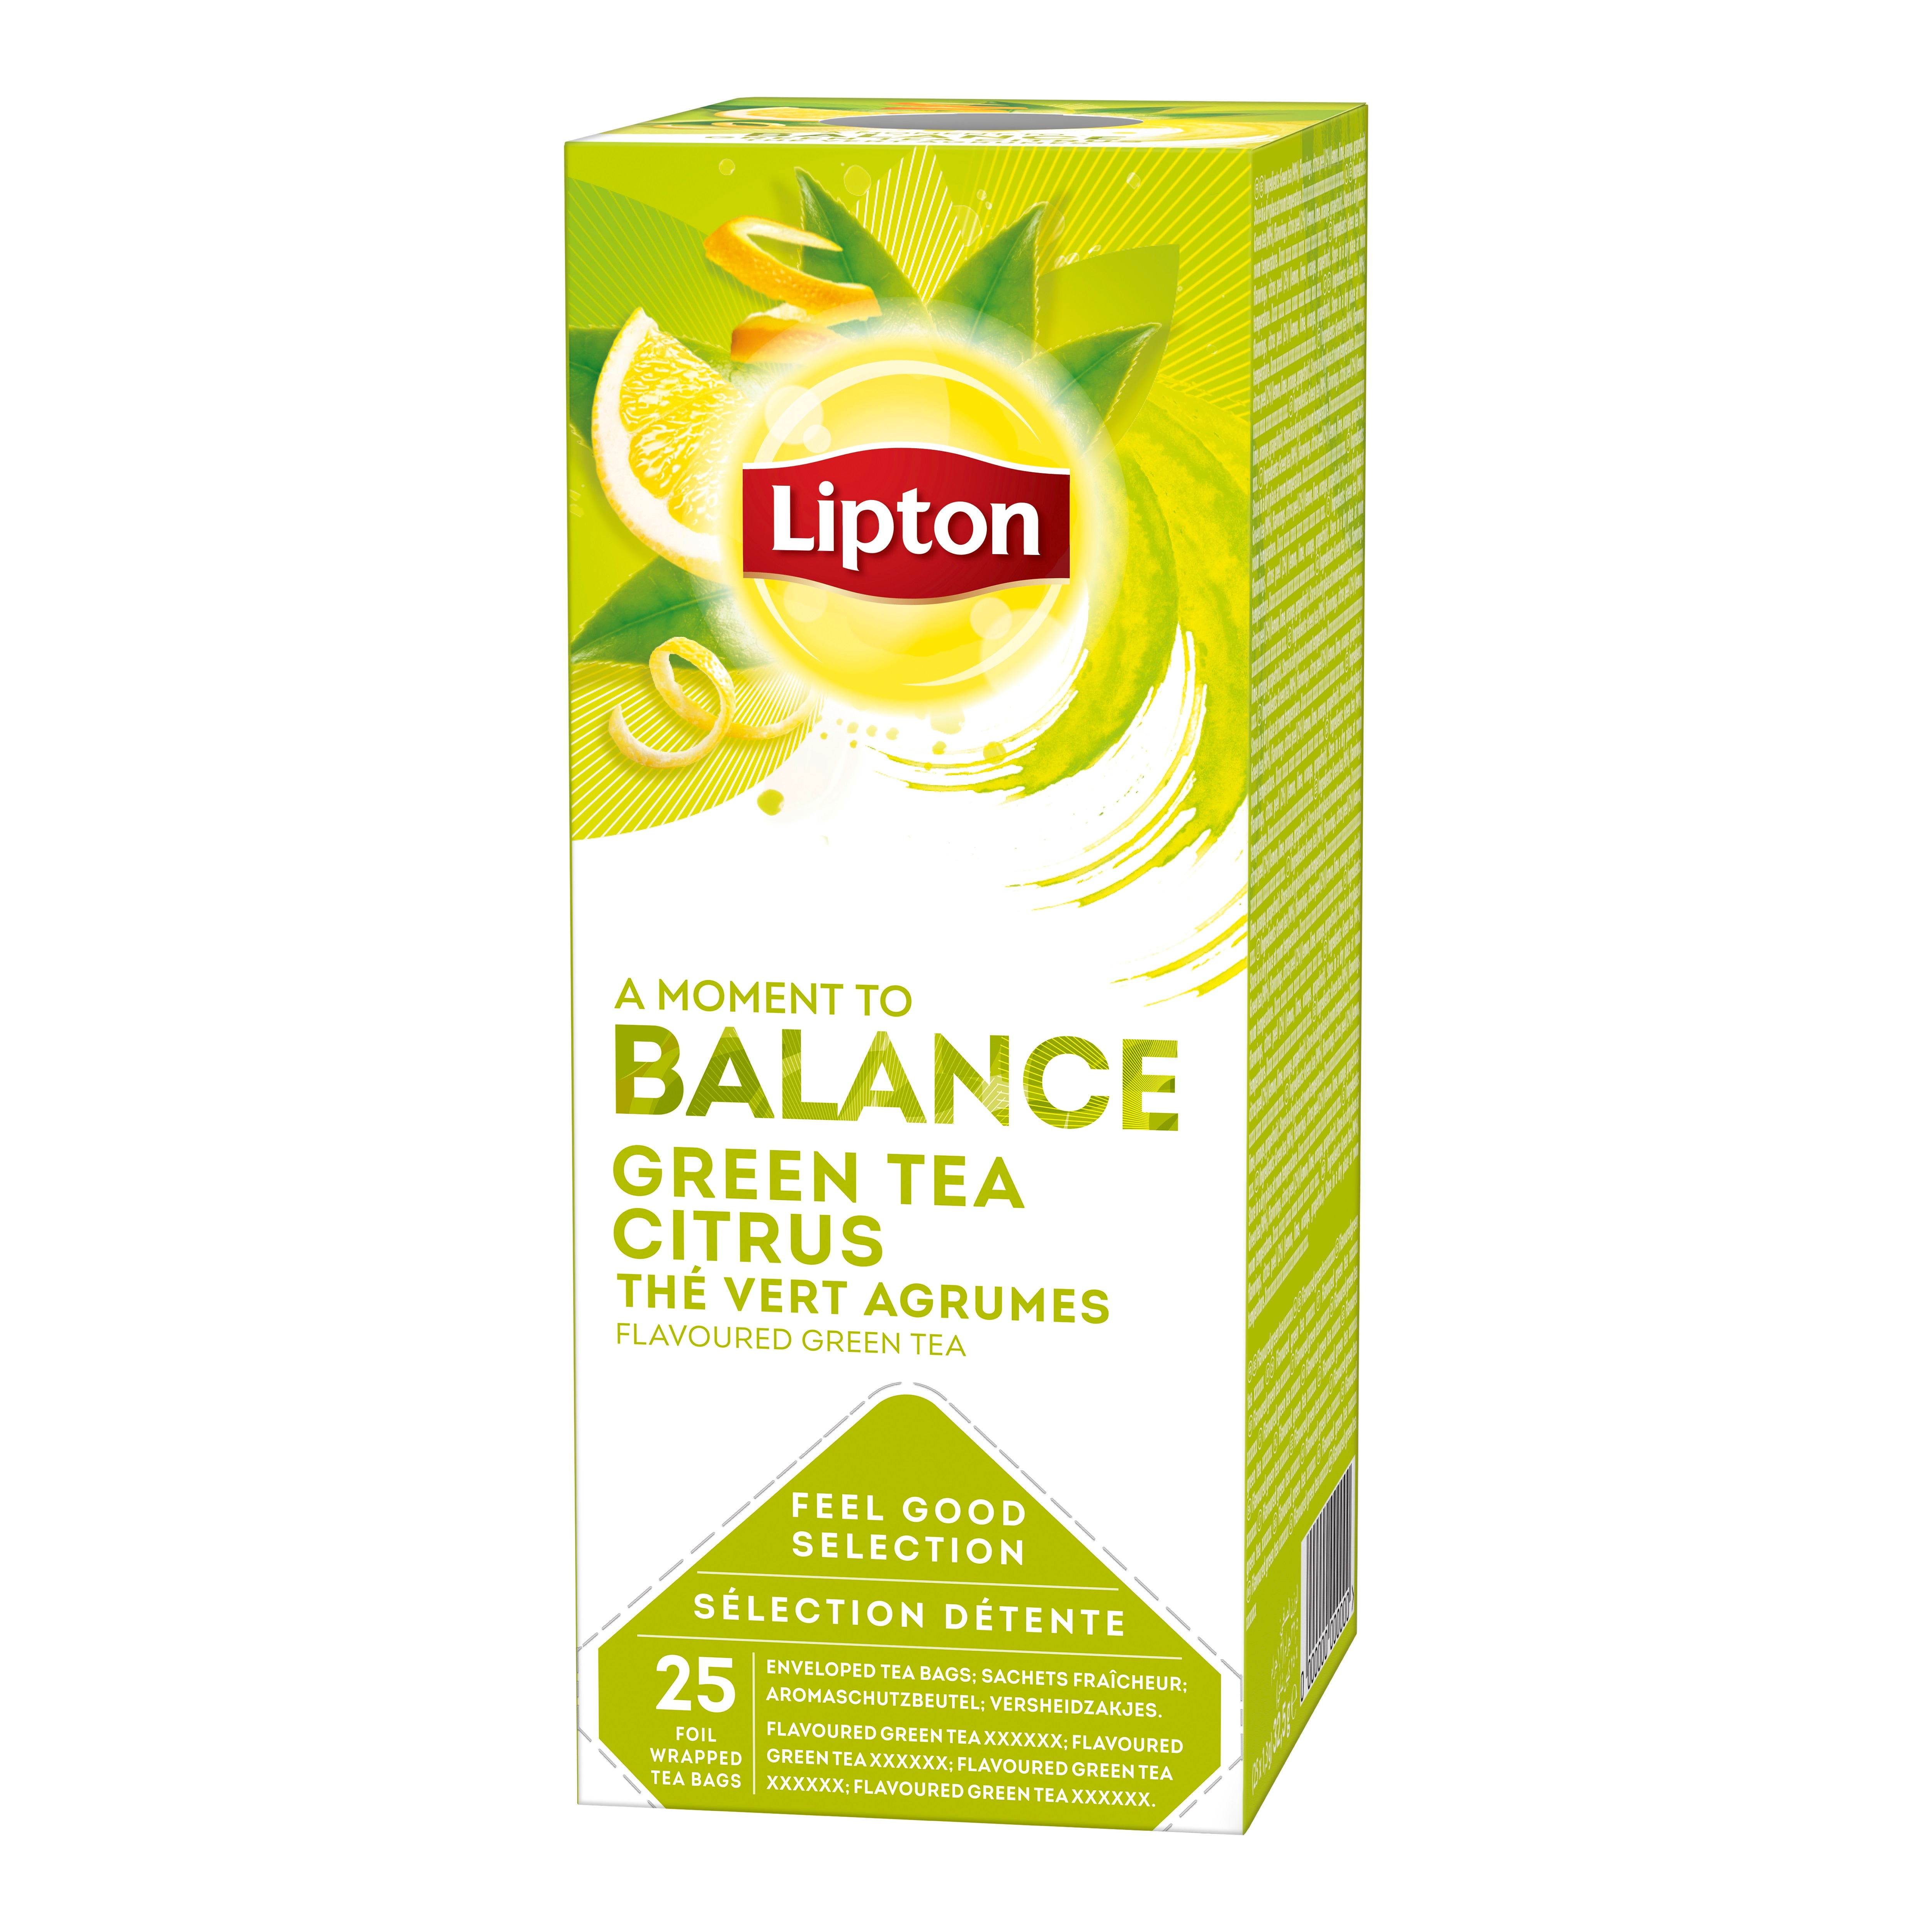 Lipton Aromatizirani zeleni čaj s citrusima 25/1 - Na raspolaganju su različiti čajevi Lipton: biljni, crni, zeleni i voćni.